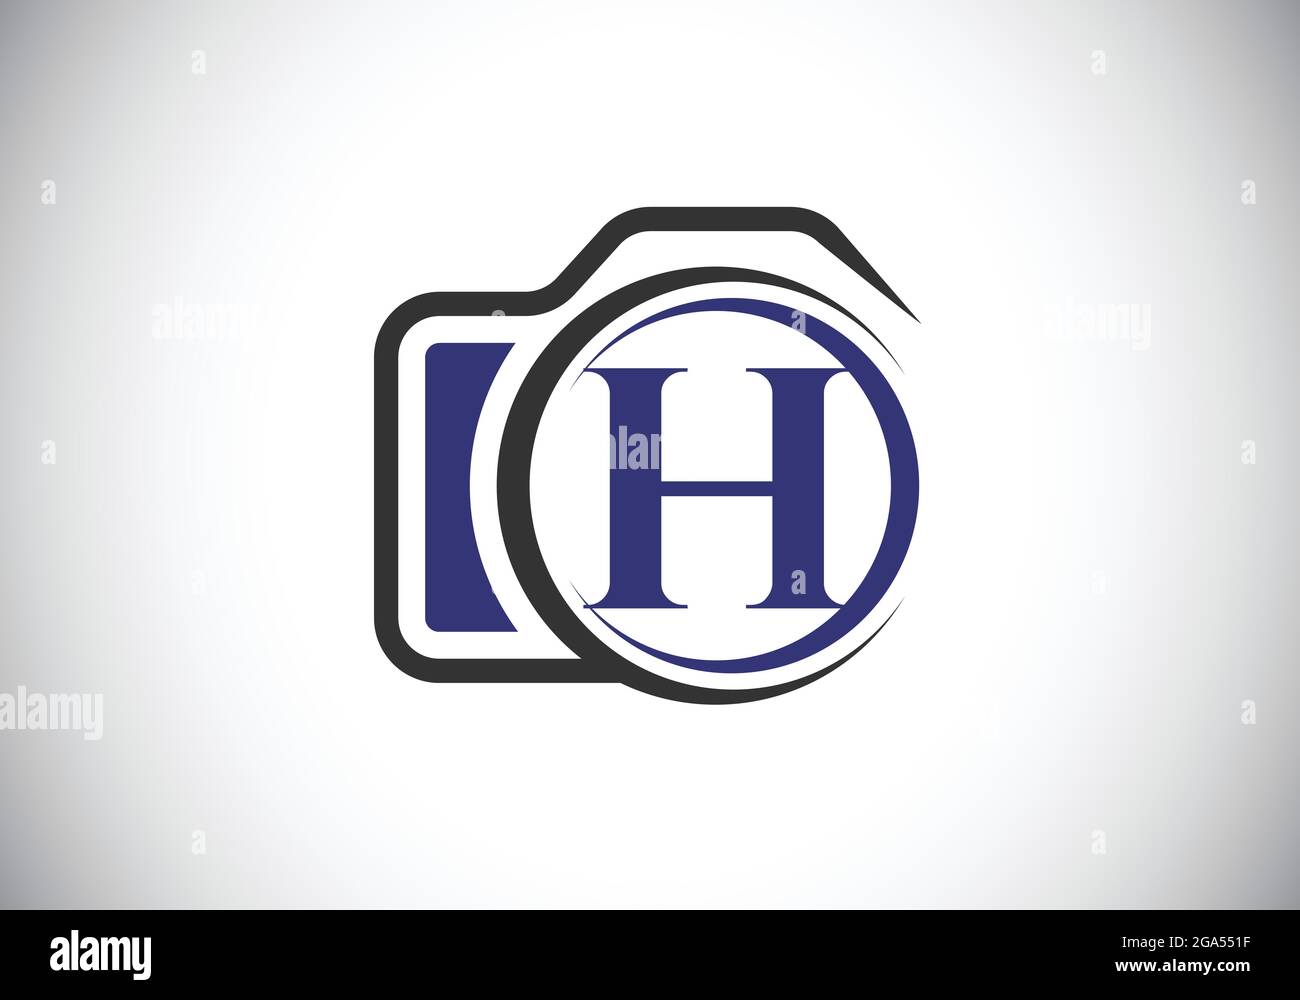 Lettre H initiale du monogramme avec une icône d'appareil photo. Illustration vectorielle du logo de photographie. Design moderne du logo pour les entreprises et les entreprises de photographie Illustration de Vecteur